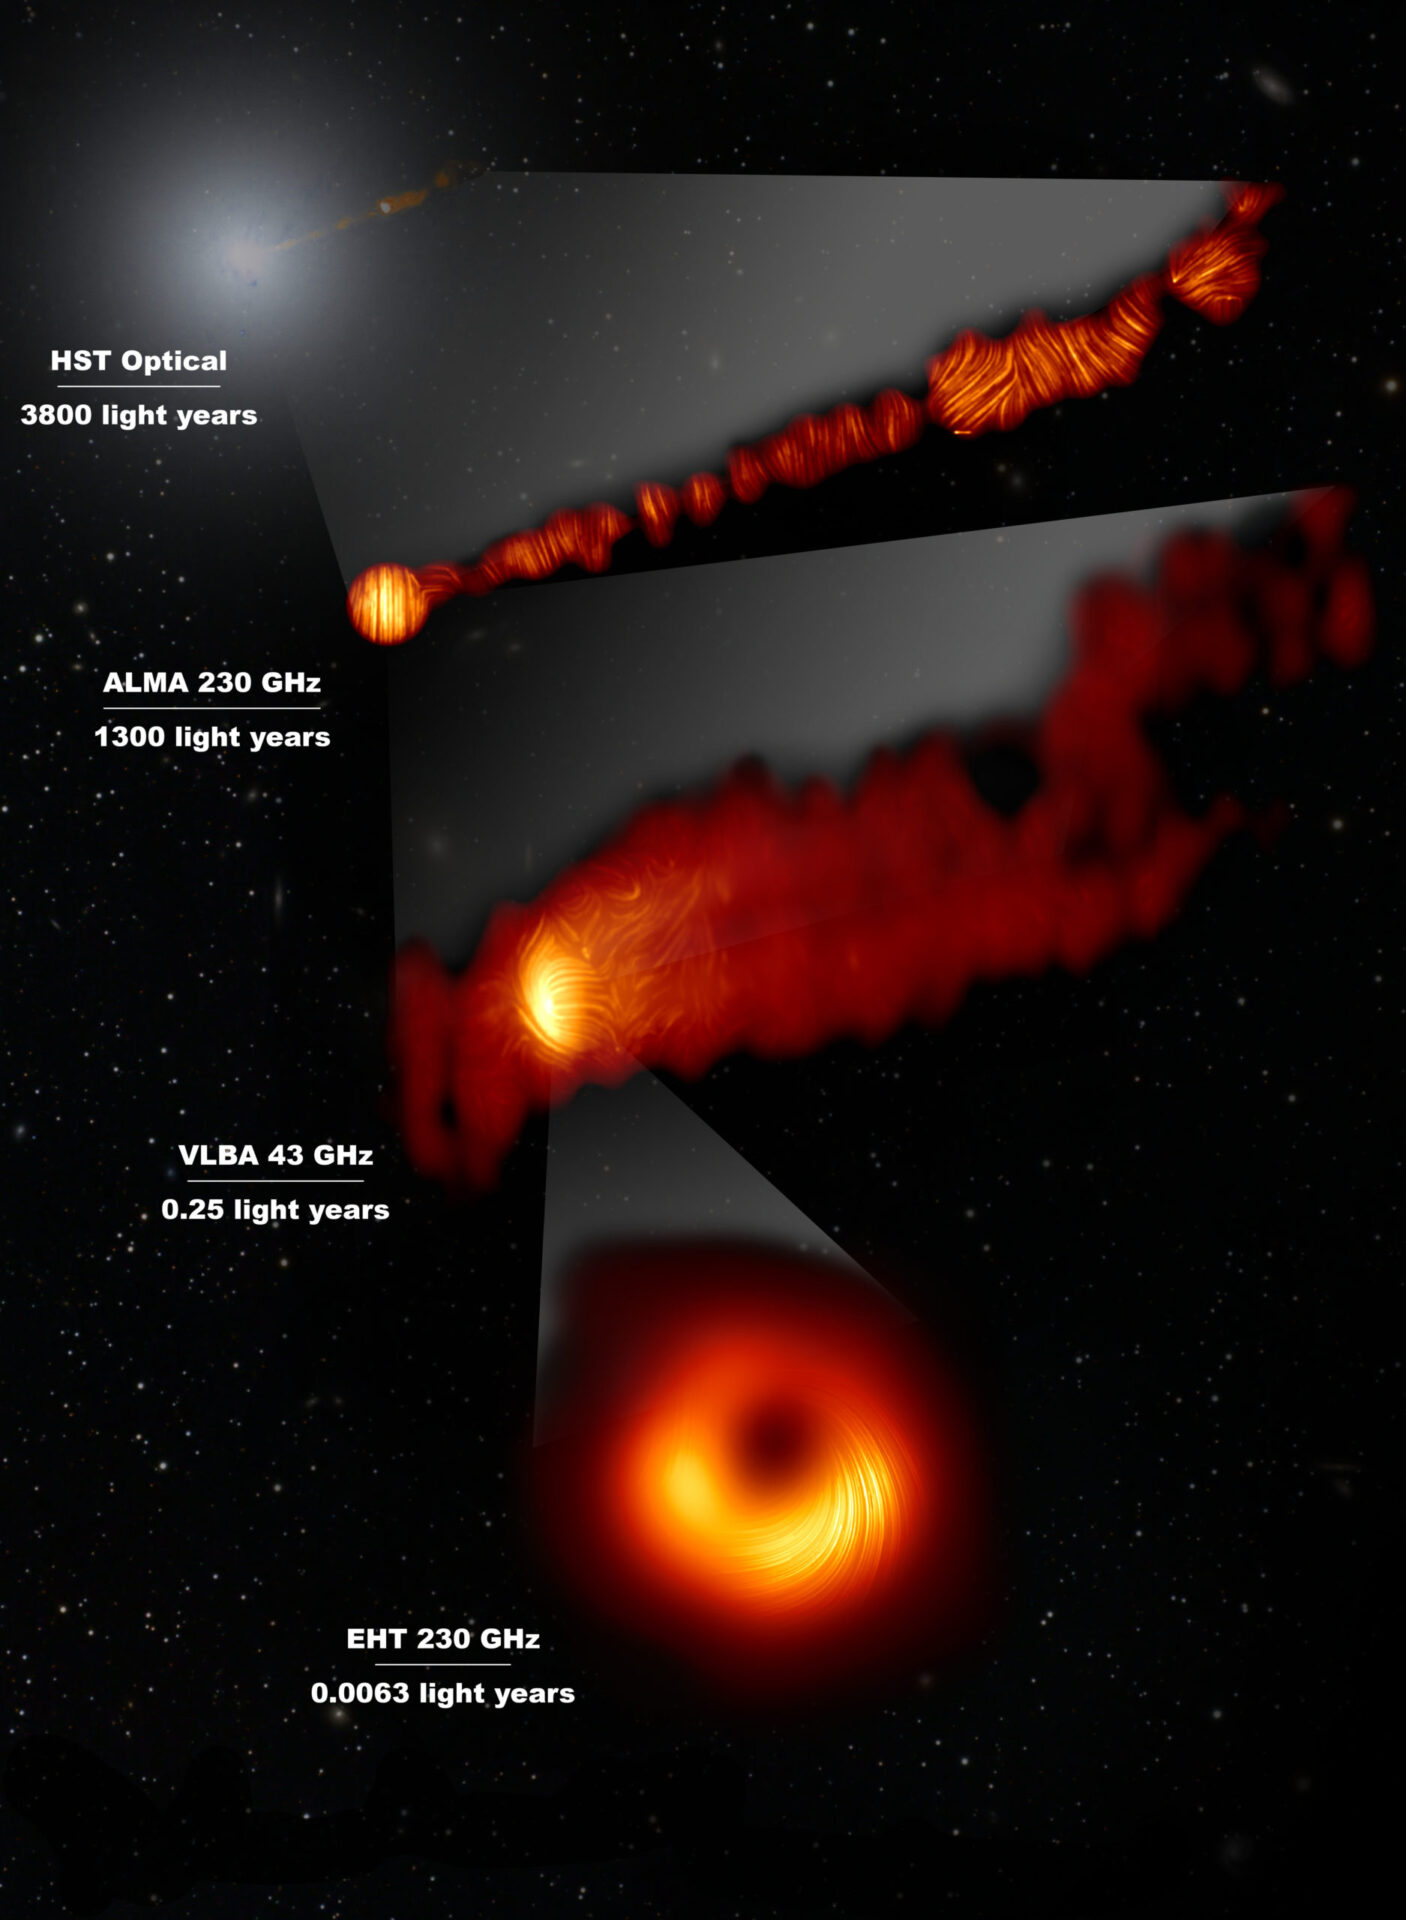 Esta composición muestra tres vistas de la región central de la galaxia Messier 87 (M87) en luz polarizada y una vista, en la longitud de onda visible, tomada con el Telescopio Espacial Hubble. La galaxia tiene un agujero negro supermasivo en su centro y es famosa por sus chorros, que se extienden mucho más allá de la galaxia. La imagen del Hubble, en la parte superior, capta una parte del chorro de unos 6000 años luz de tamaño.  Una de las imágenes de luz polarizada, obtenida con el conjunto de antenas ALMA muestra parte del chorro en luz polarizada. Esta imagen capta la parte del chorro, con un tamaño de 6000 años luz, que está más cerca del centro de la galaxia.  Las otras imágenes en luz polarizada se acercan al agujero negro supermasivo: la vista central cubre una región de aproximadamente un año luz de tamaño y se obtuvo con el VLBA (Very Long Baseline Array) del Observatorio Nacional de Radioastronomía, en los Estados Unidos.  La vista más ampliada se obtuvo mediante la vinculación de ocho telescopios de todo el mundo para crear un telescopio virtual del tamaño de la Tierra, el EHT (Event Horizon Telescope, Telescopio de Horizonte de Sucesos). Esto permite a los astrónomos ver la zona que está muy cerca del agujero negro supermasivo, en la región donde se lanzan los chorros.  Las líneas marcan la orientación de la polarización, que está relacionada con el campo magnético en las regiones que vemos en la imagen. Los datos de ALMA proporcionan una descripción de la estructura del campo magnético a lo largo del chorro. Por lo tanto, la información combinada del EHT y ALMA permite a los astrónomos investigar el papel de los campos magnéticos desde las proximidades del horizonte de sucesos (como ha demostrado el EHT en escalas de día luz) mucho más allá de la galaxia M87 a lo largo de sus potentes chorros (como se ha visto con ALMA en escalas de miles de años luz).  Los valores en GHz se refieren a las frecuencias de luz en las que se realizaron las diferentes observaciones. Las líneas horizontales muestran la escala (en años luz) de cada una de las imágenes individuales. Crédito: EHT Collaboration; ALMA (ESO/NAOJ/NRAO), Goddi et al.; NASA, ESA and the Hubble Heritage Team (STScI/AURA); VLBA (NRAO), Kravchenko et al.; J. C. Algaba, I. Martí-Vidal